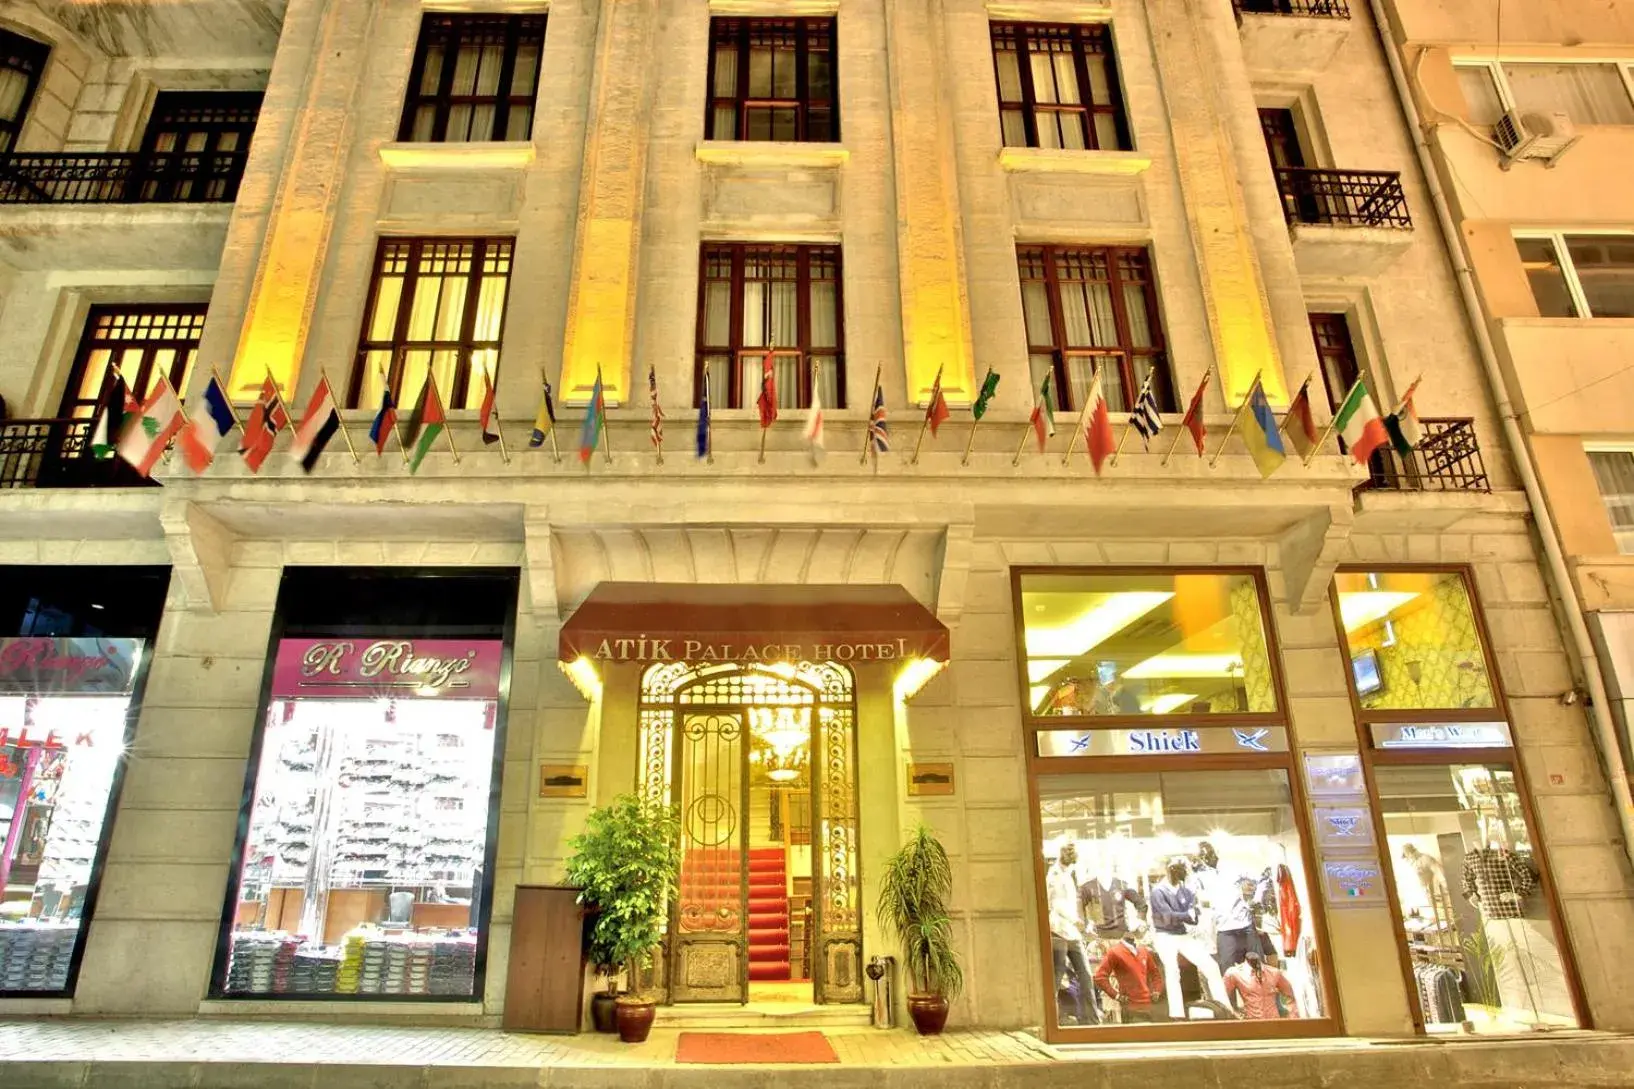 Facade/entrance, Property Building in Atik Palas Hotel